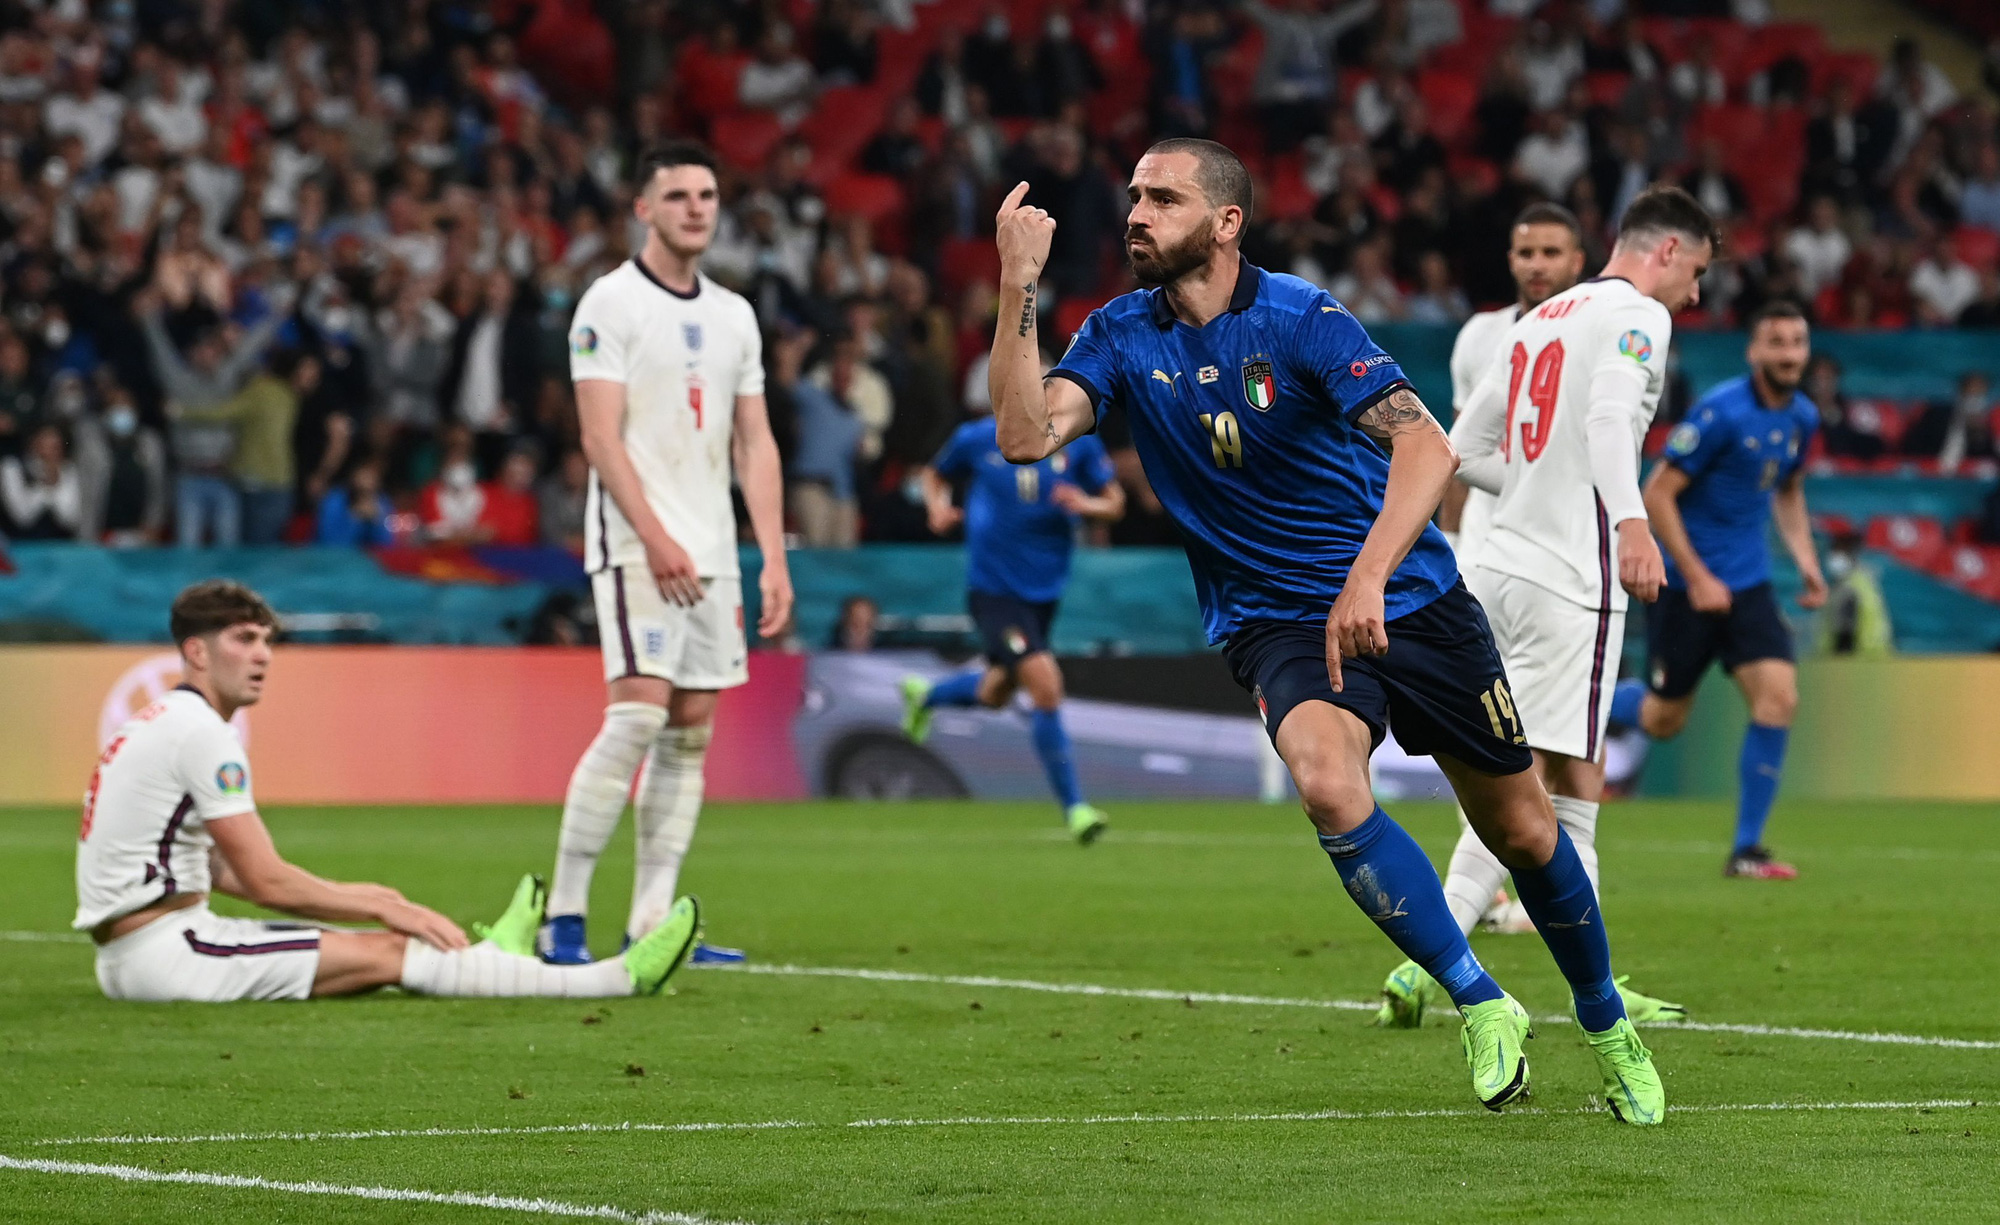 Anh gục ngã trên chấm luân lưu, Ý lên ngôi vô địch Euro 2020 - Ảnh 6.